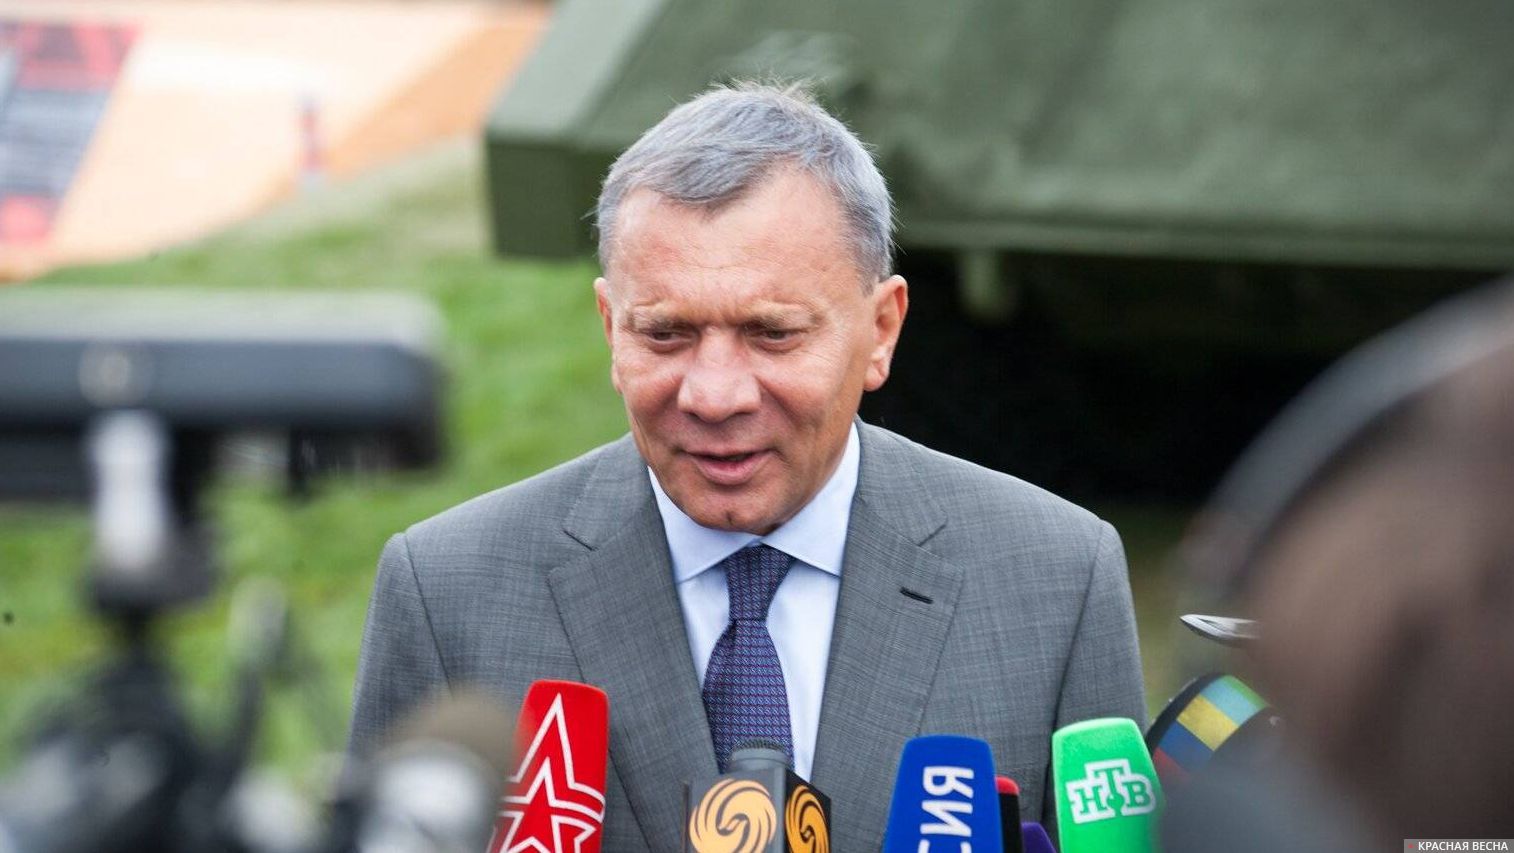 Заместитель председателя правительства Российской Федерации по вопросам оборонно-промышленного комплекса Борисов Юрий Иванович